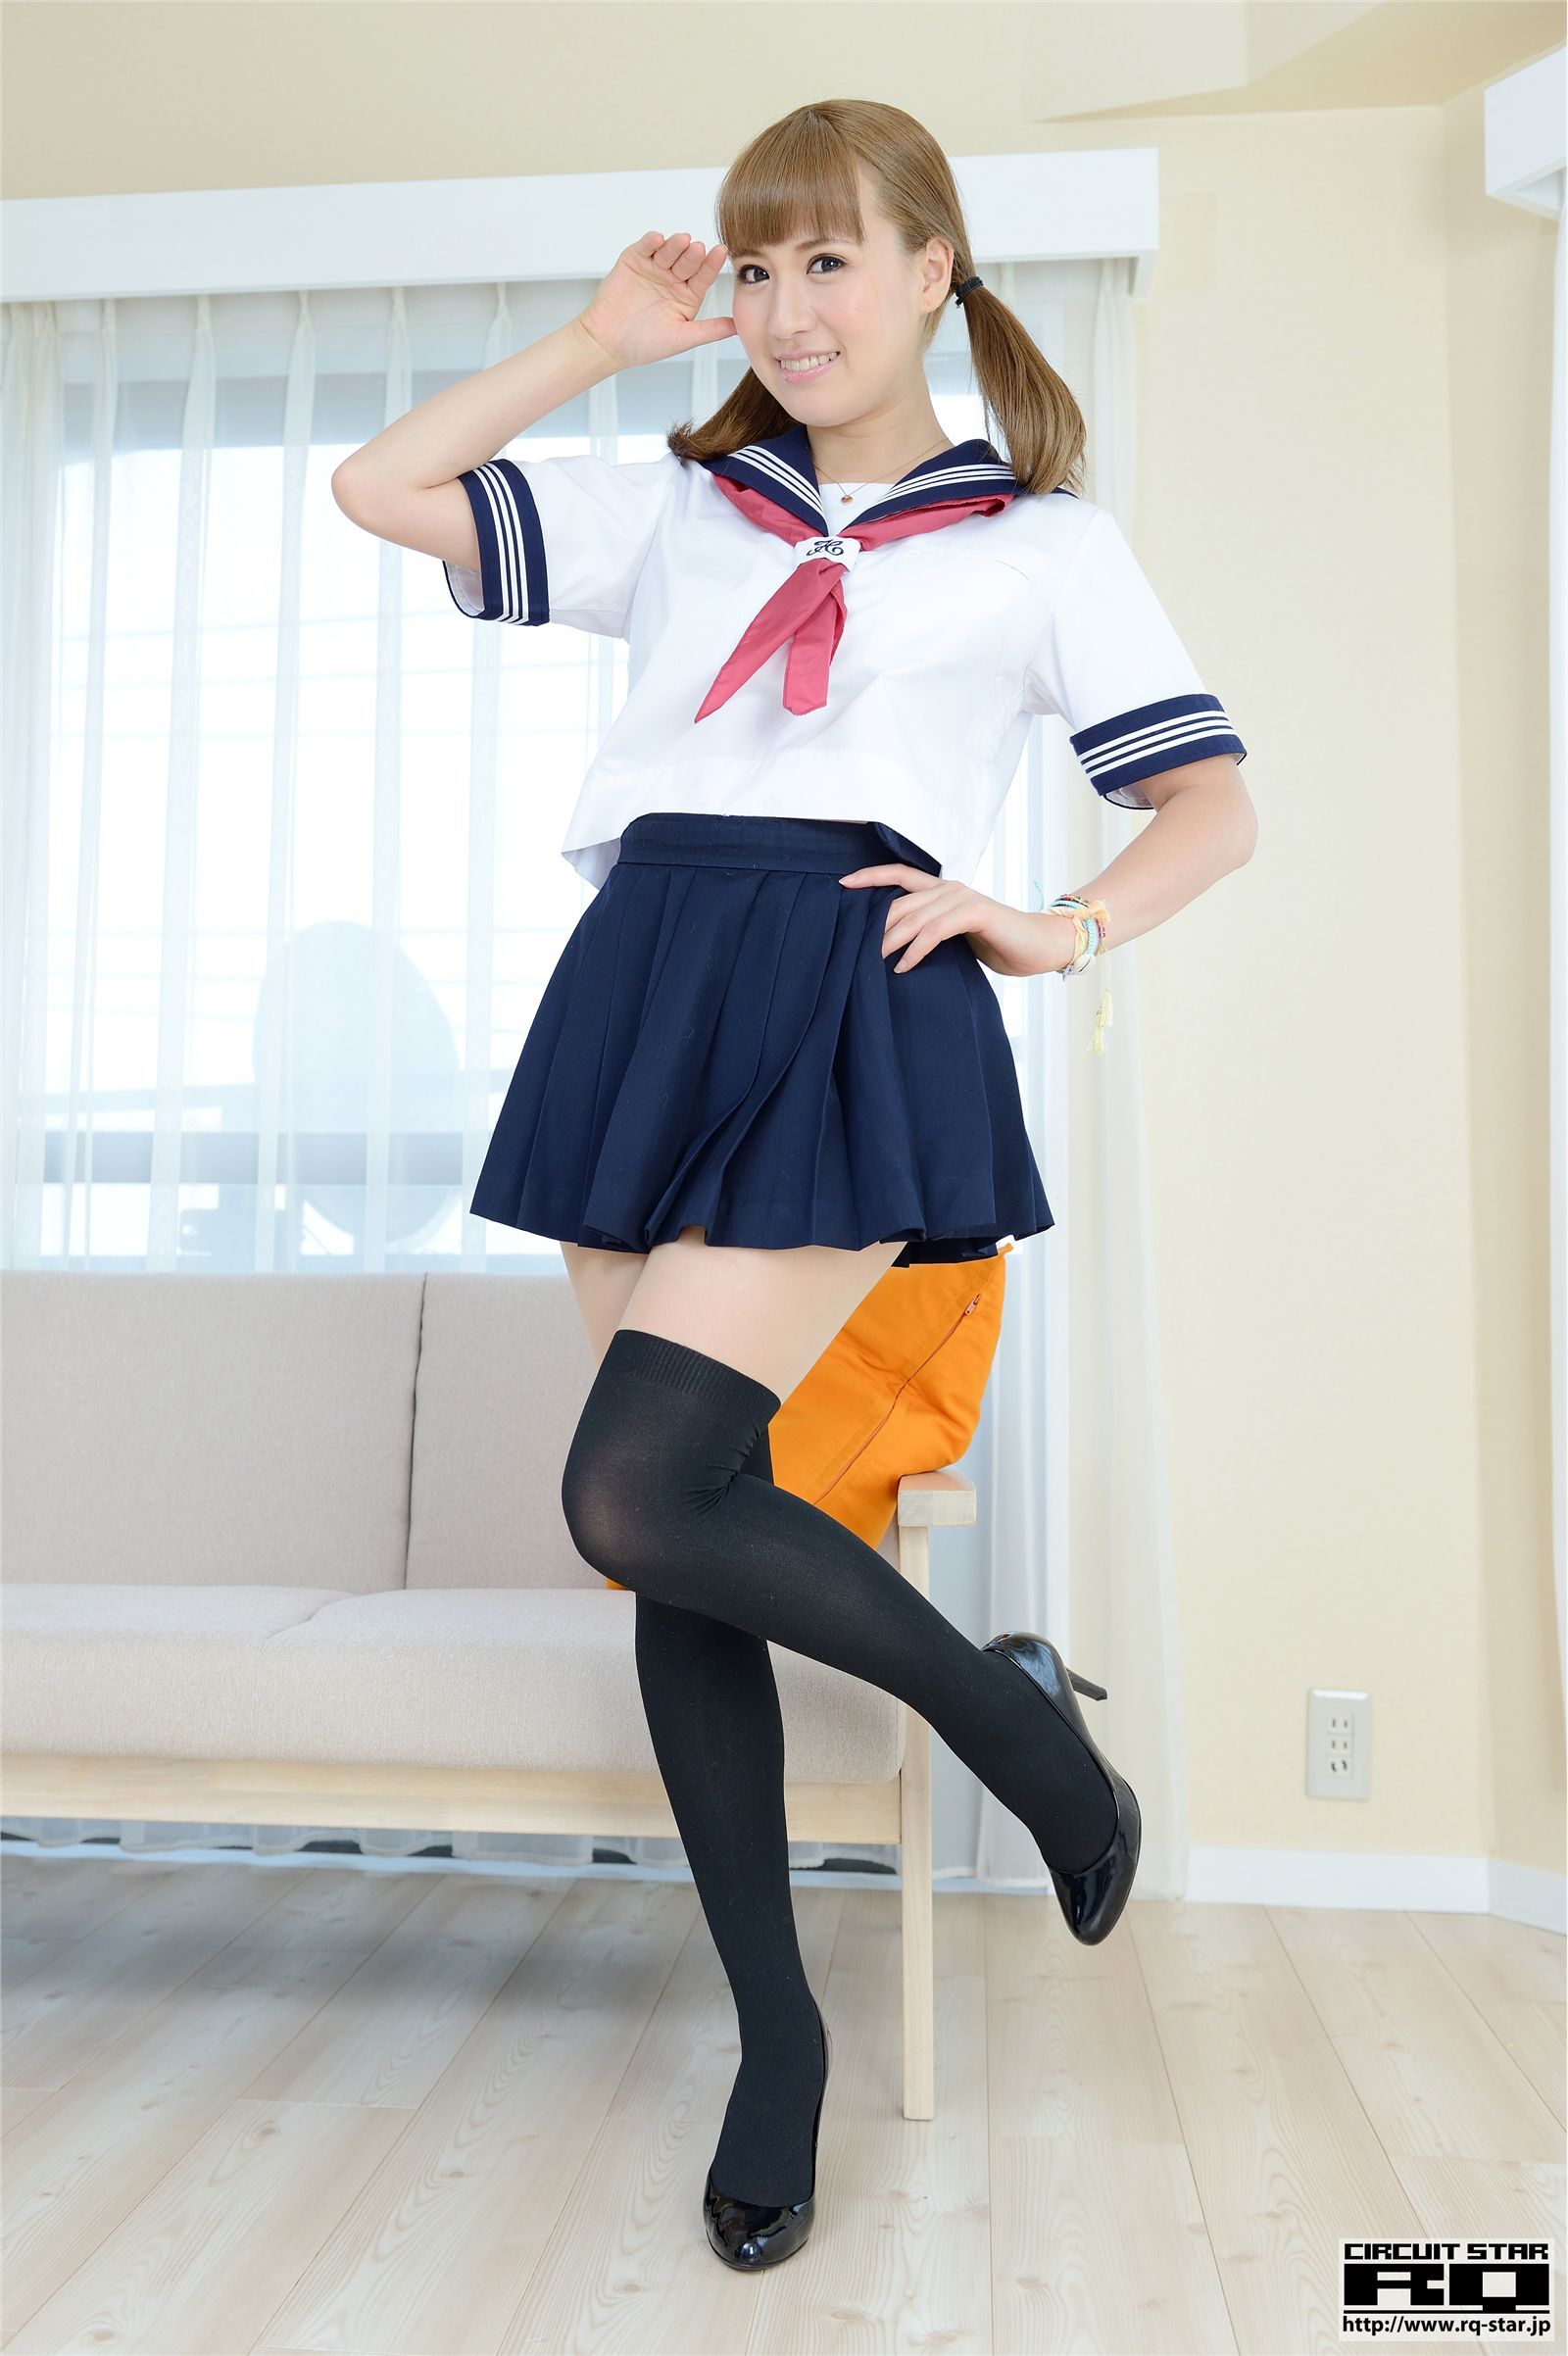 [rq-star] 2014.09.15 no.00943 nozomi Misaki school girl